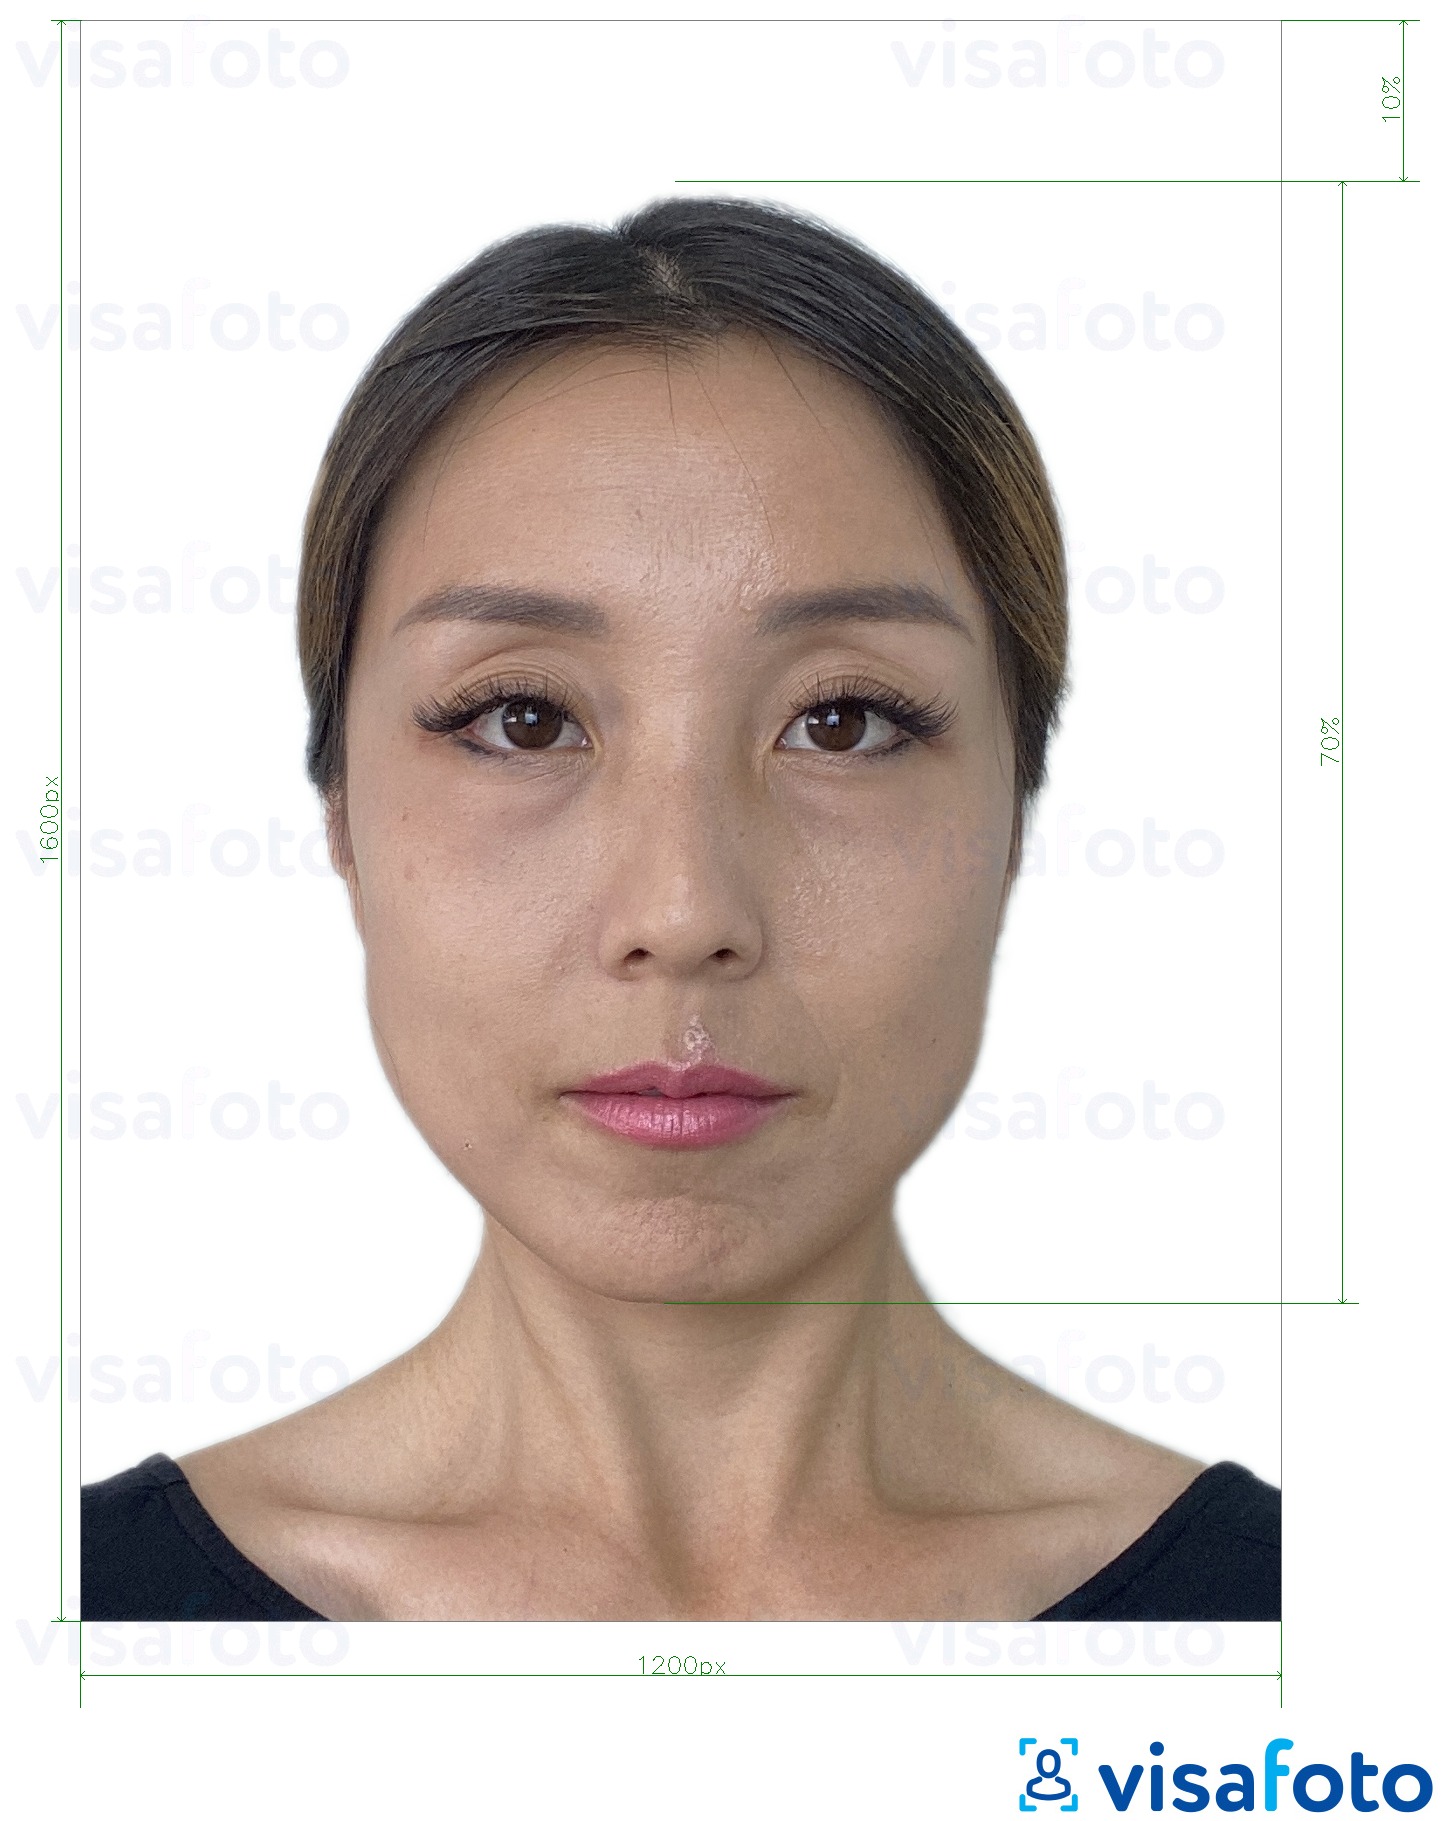 Exemplu de fotografie pentru Hong Kong e-pașaport online 1200x1600 pixeli cu aceeași dimensiune indicată